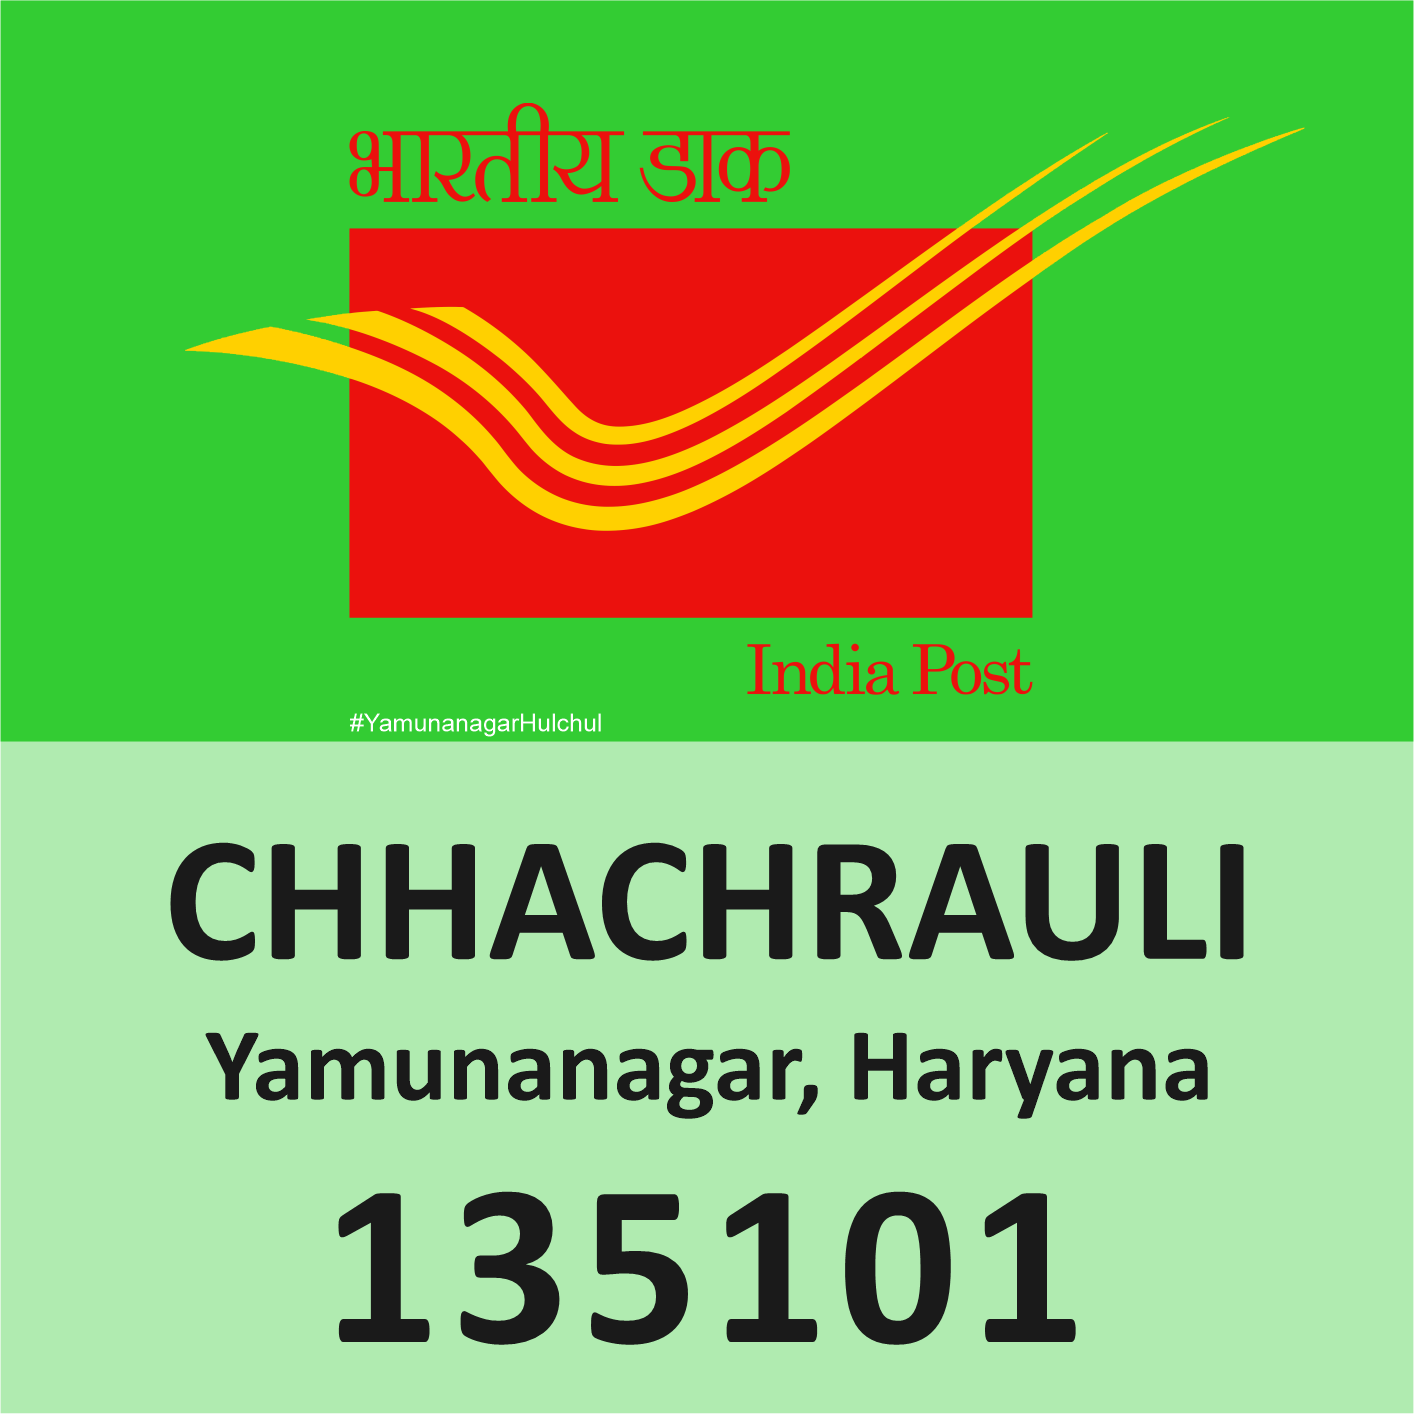 Pin Code of Chhachhrauli, Yamunanagar is 135101, #YamunanagarHulchul, #यमुनानगरहलचल, #PanditKhabri, Pandit Khabri, Pin Code of Yamunanagar, Haryana,